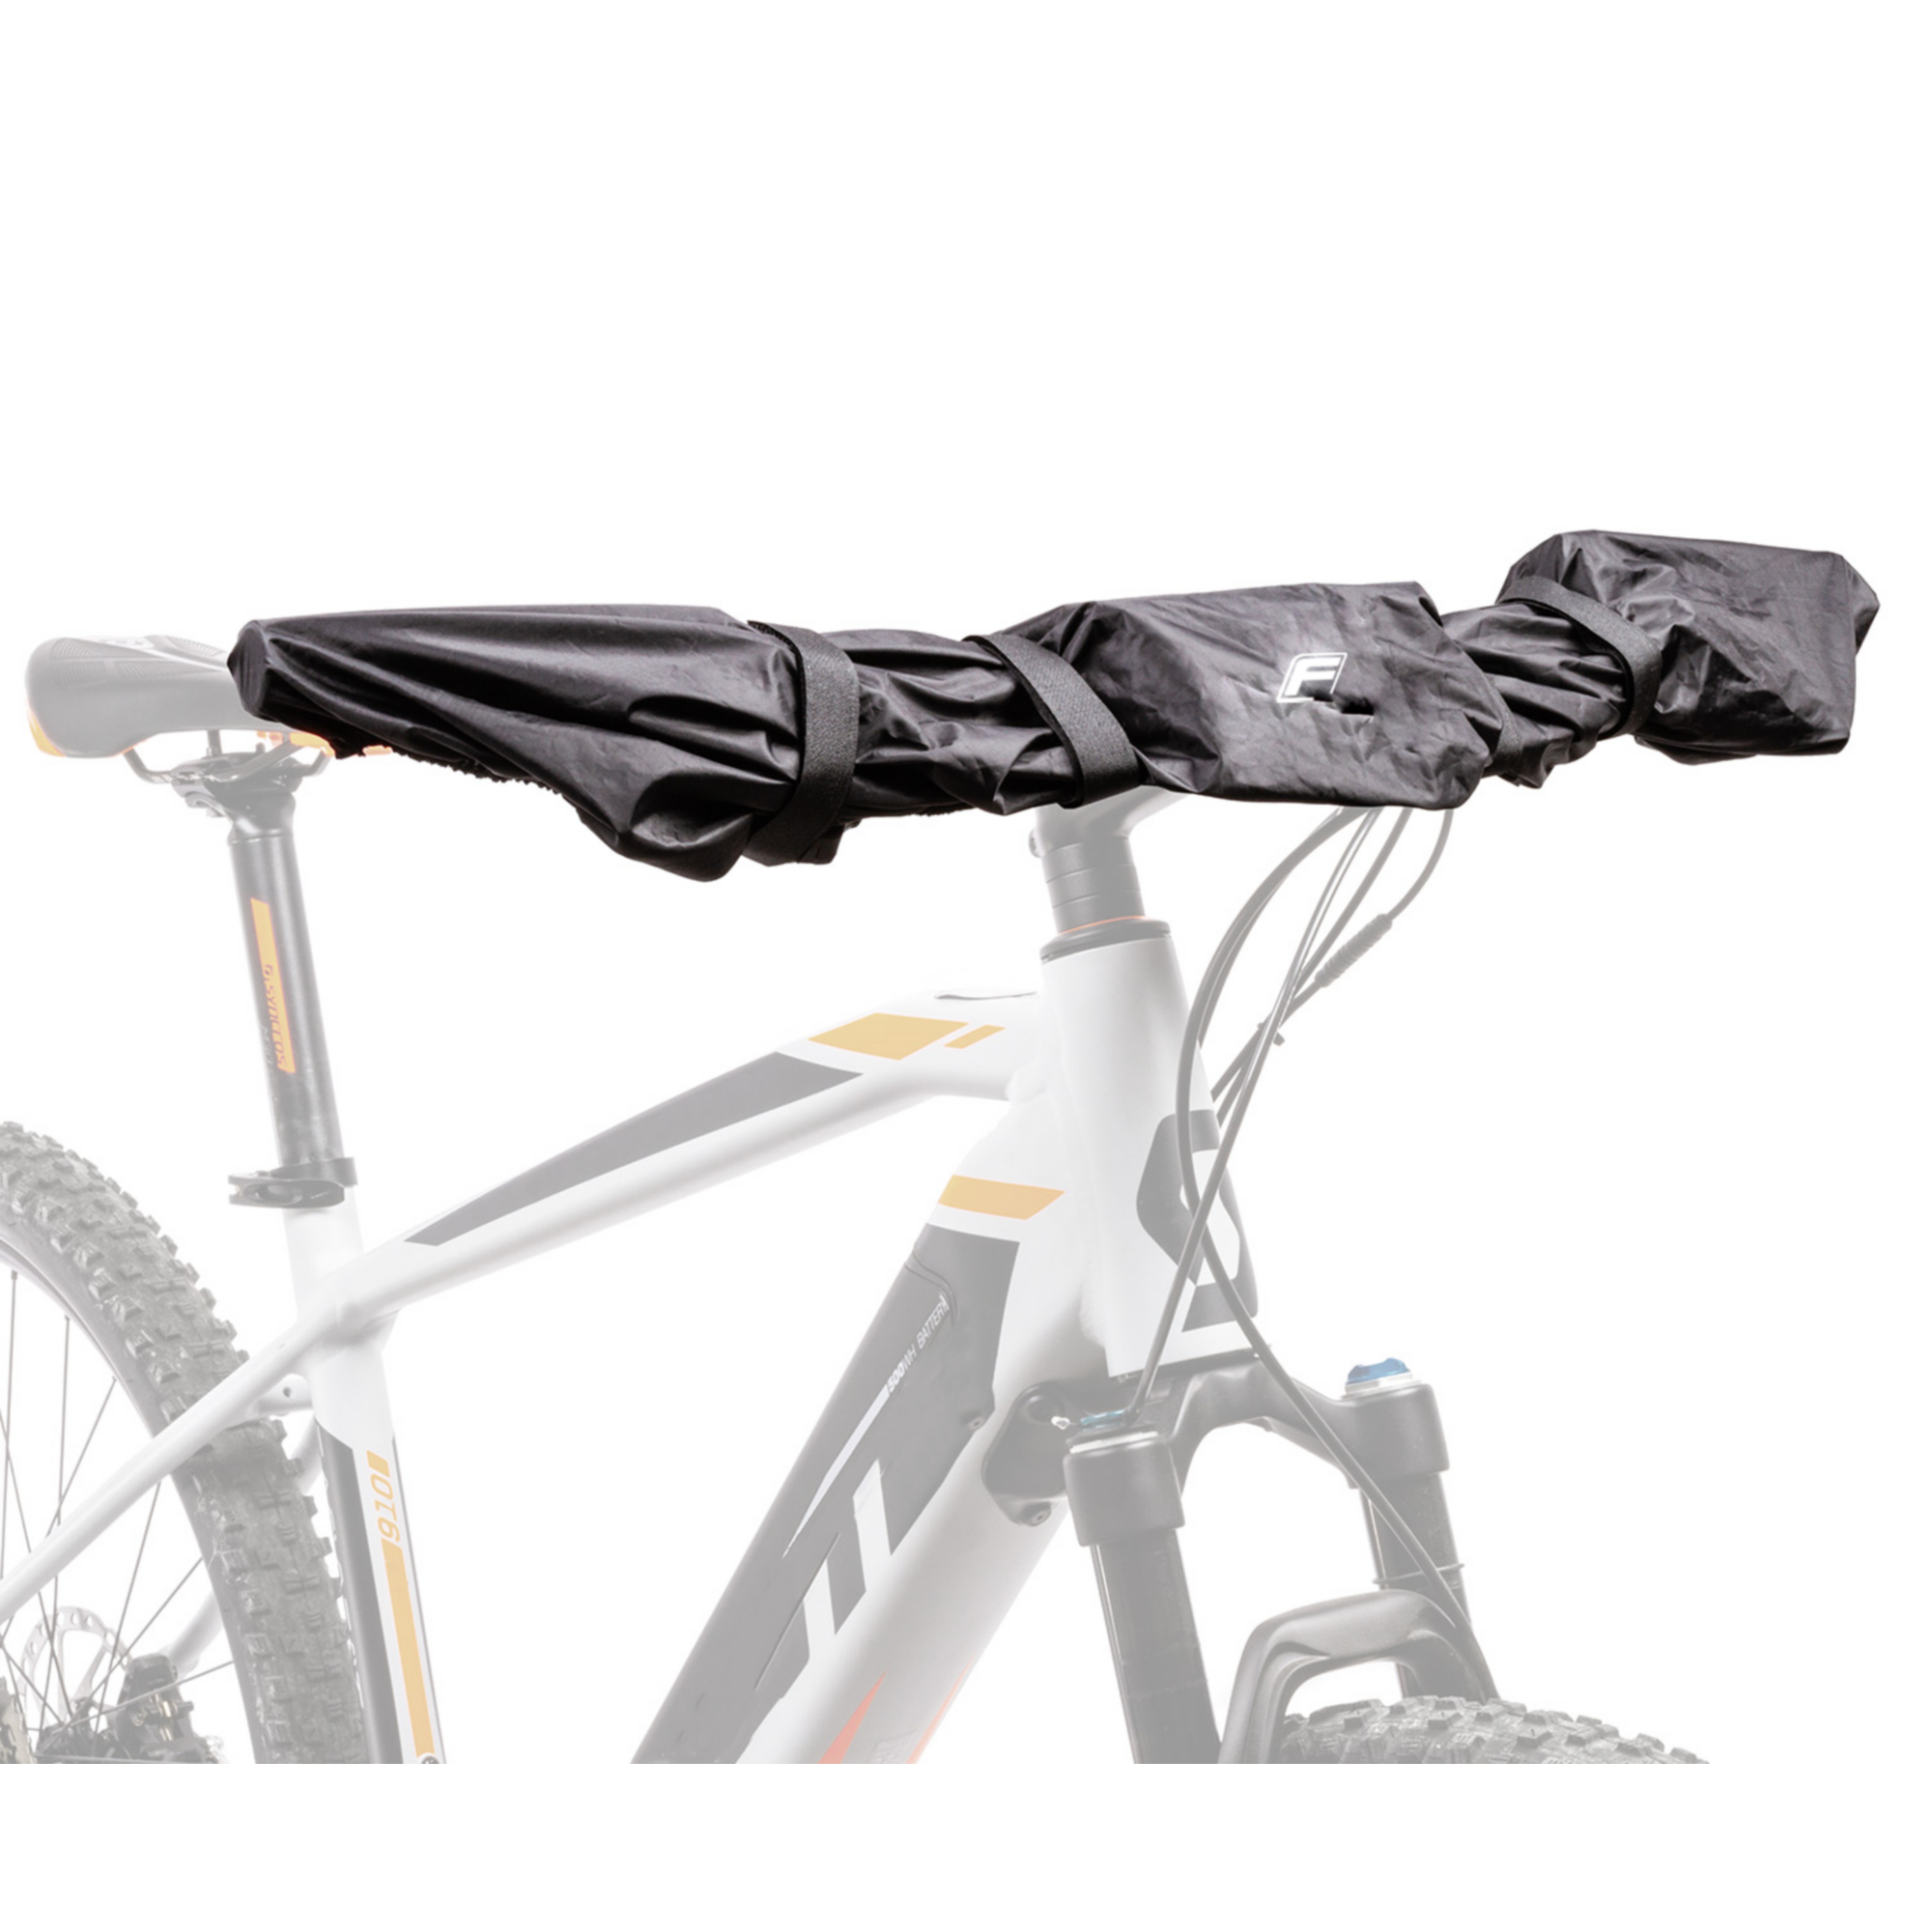 Lenker-Schutzhülle schwarz für E-Bike Display + product picture